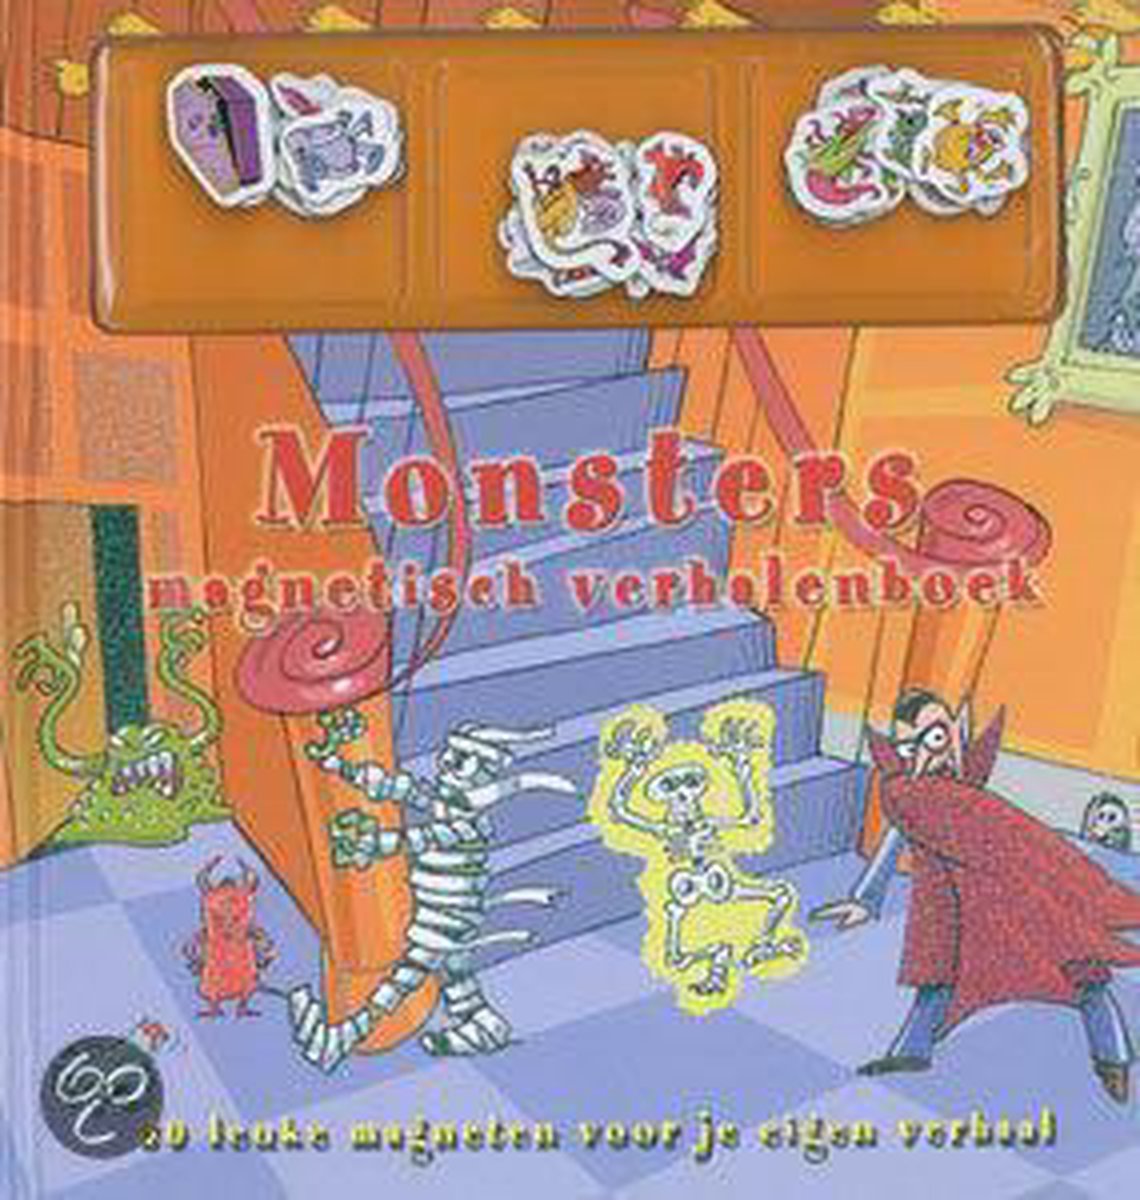 Monsters magnetisch verhalenboek